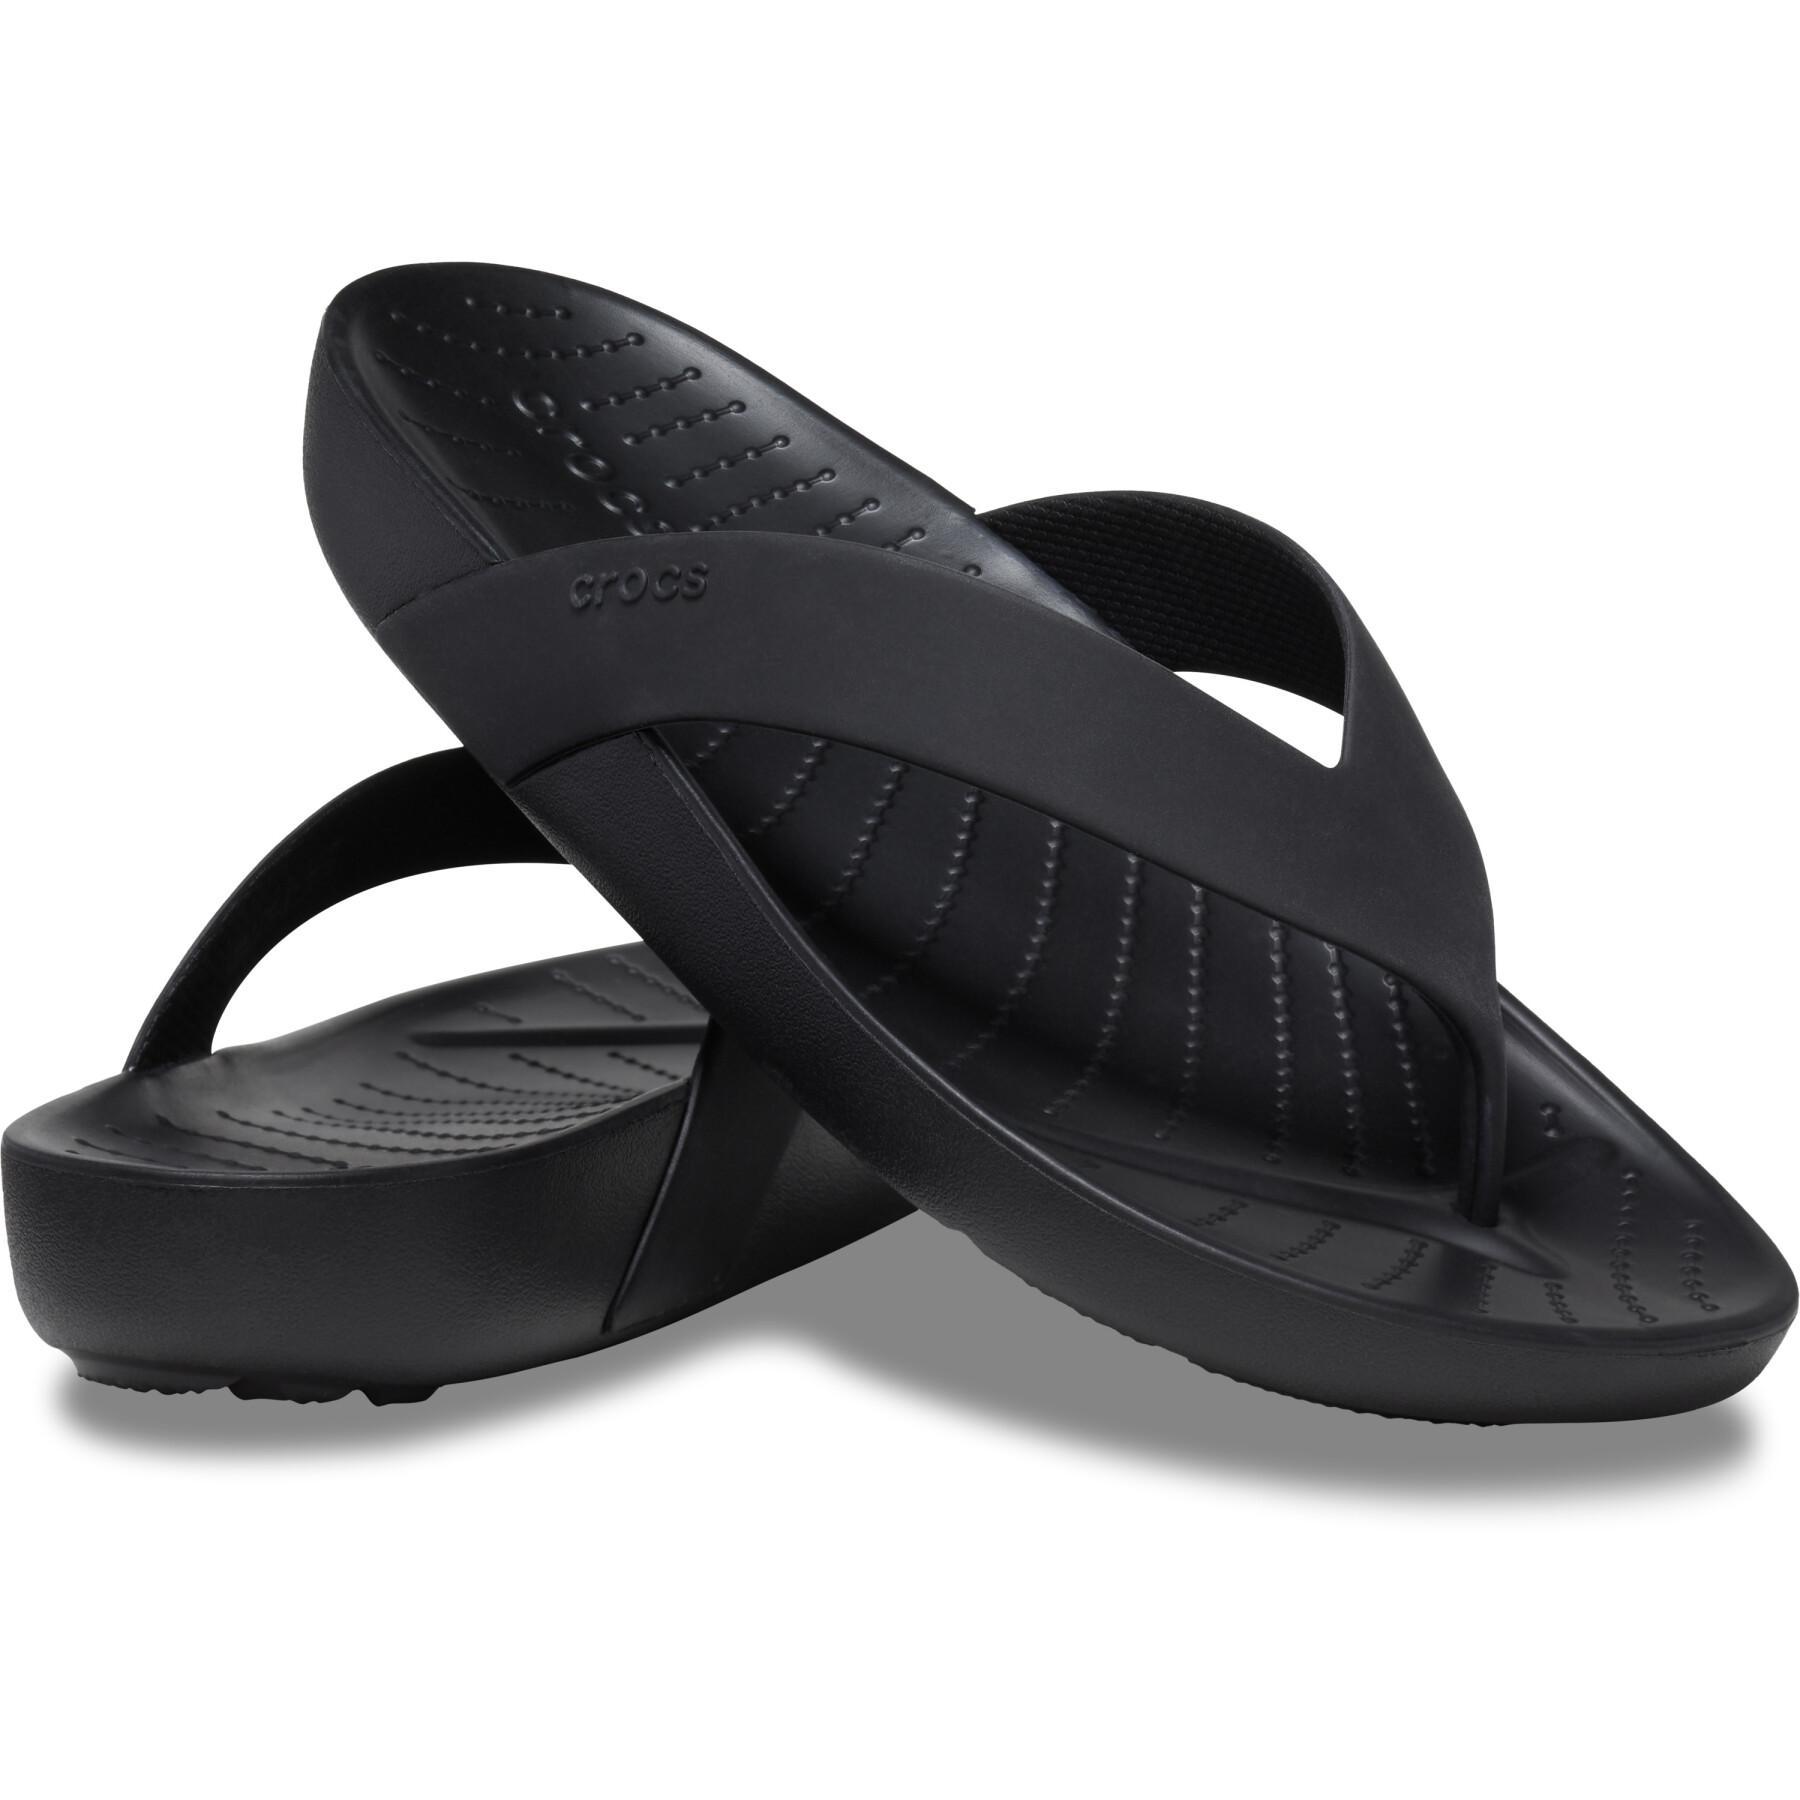 Women's flip-flops Crocs Splash